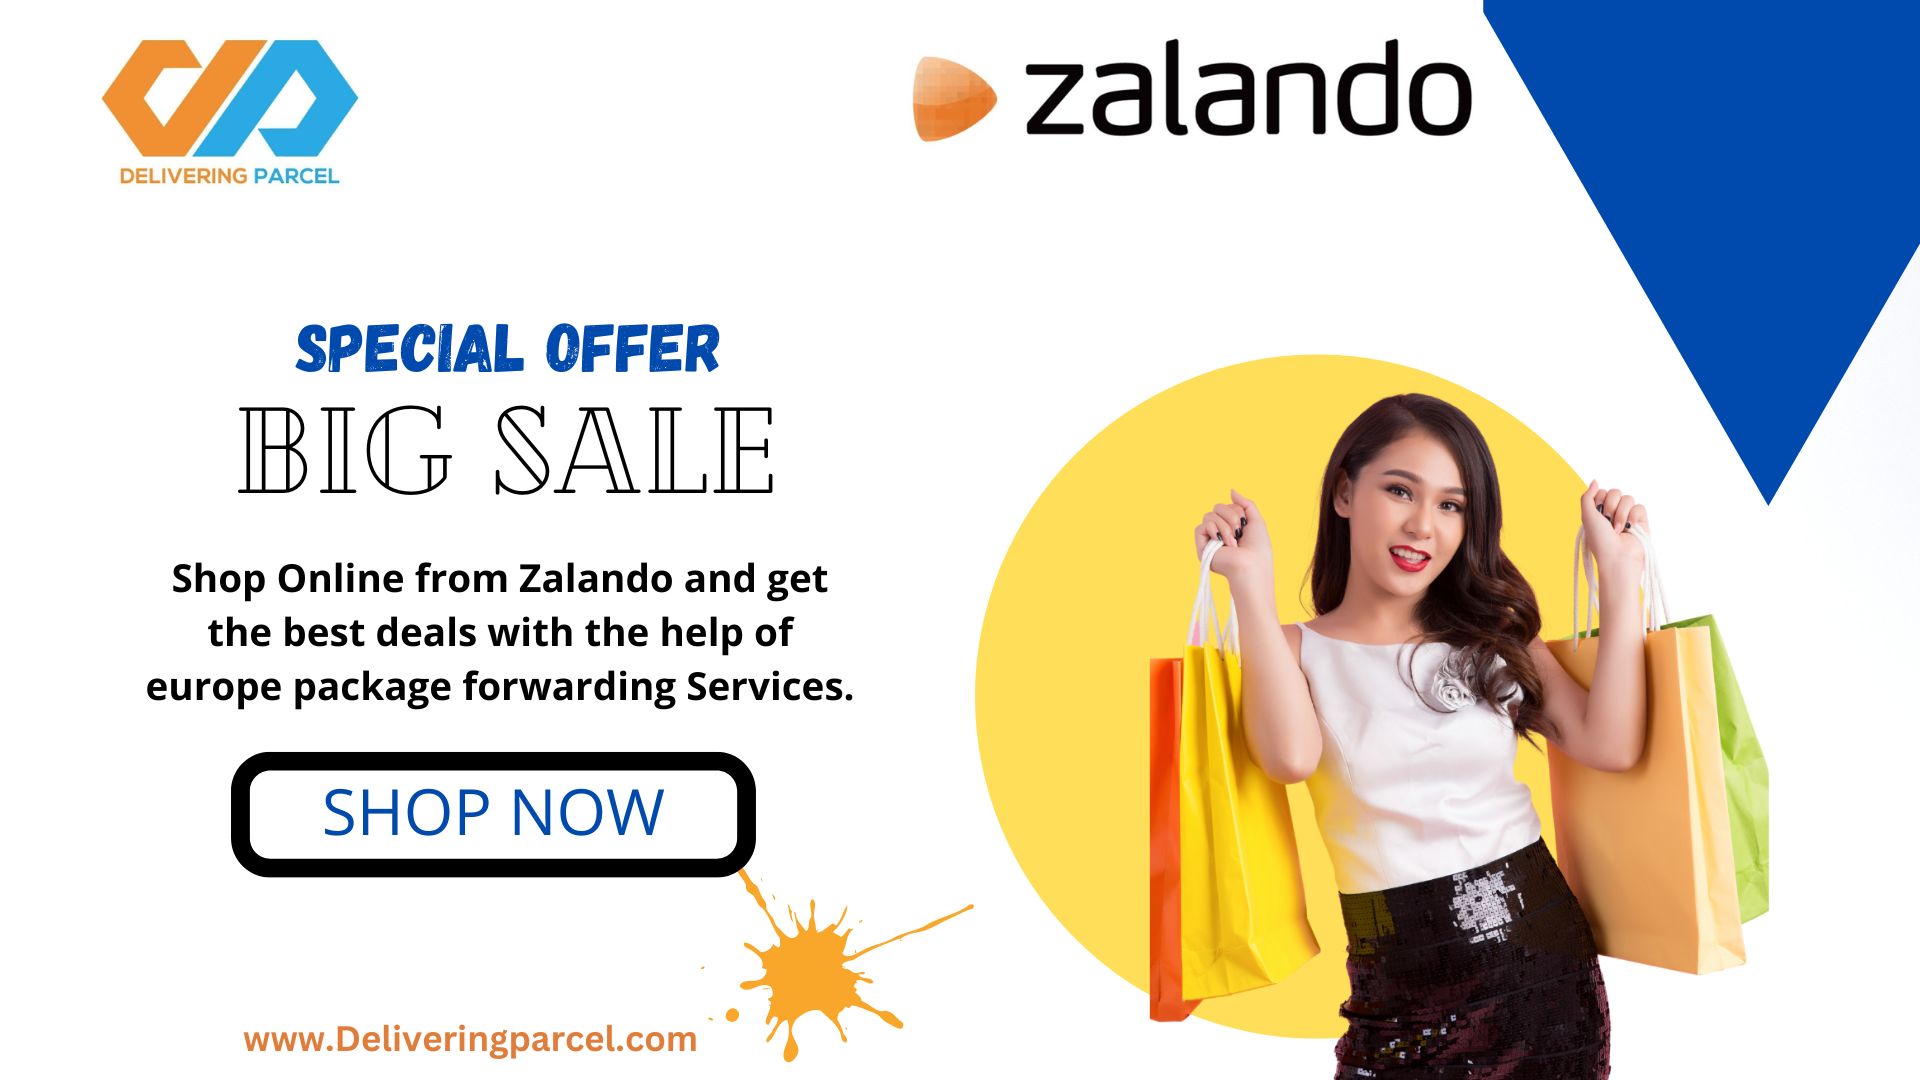 Big Sale offer Zalando 